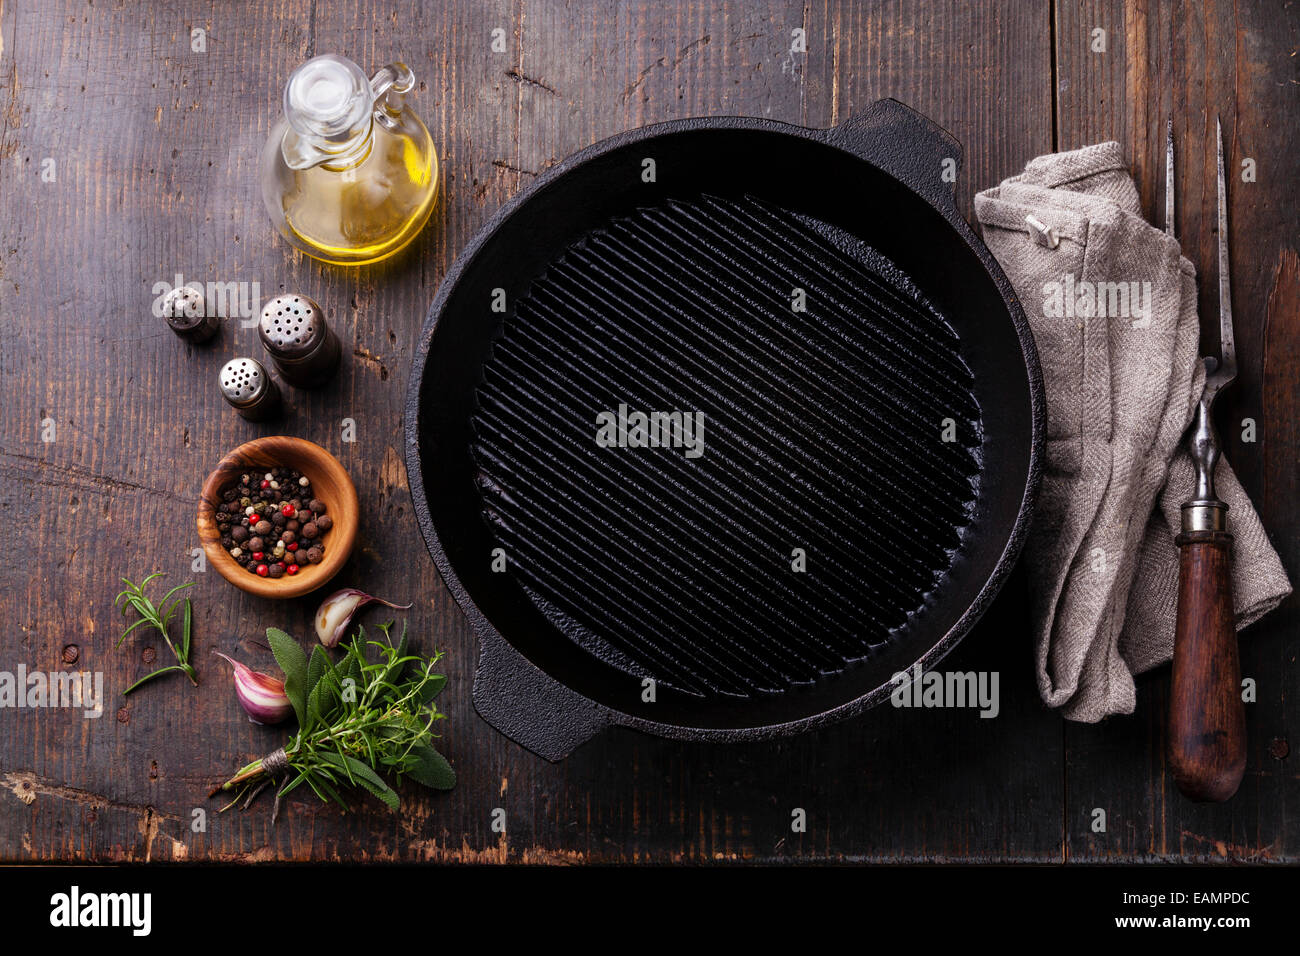 Vide Fer noir gril et fourchette à viande sur fond de texture en bois Banque D'Images